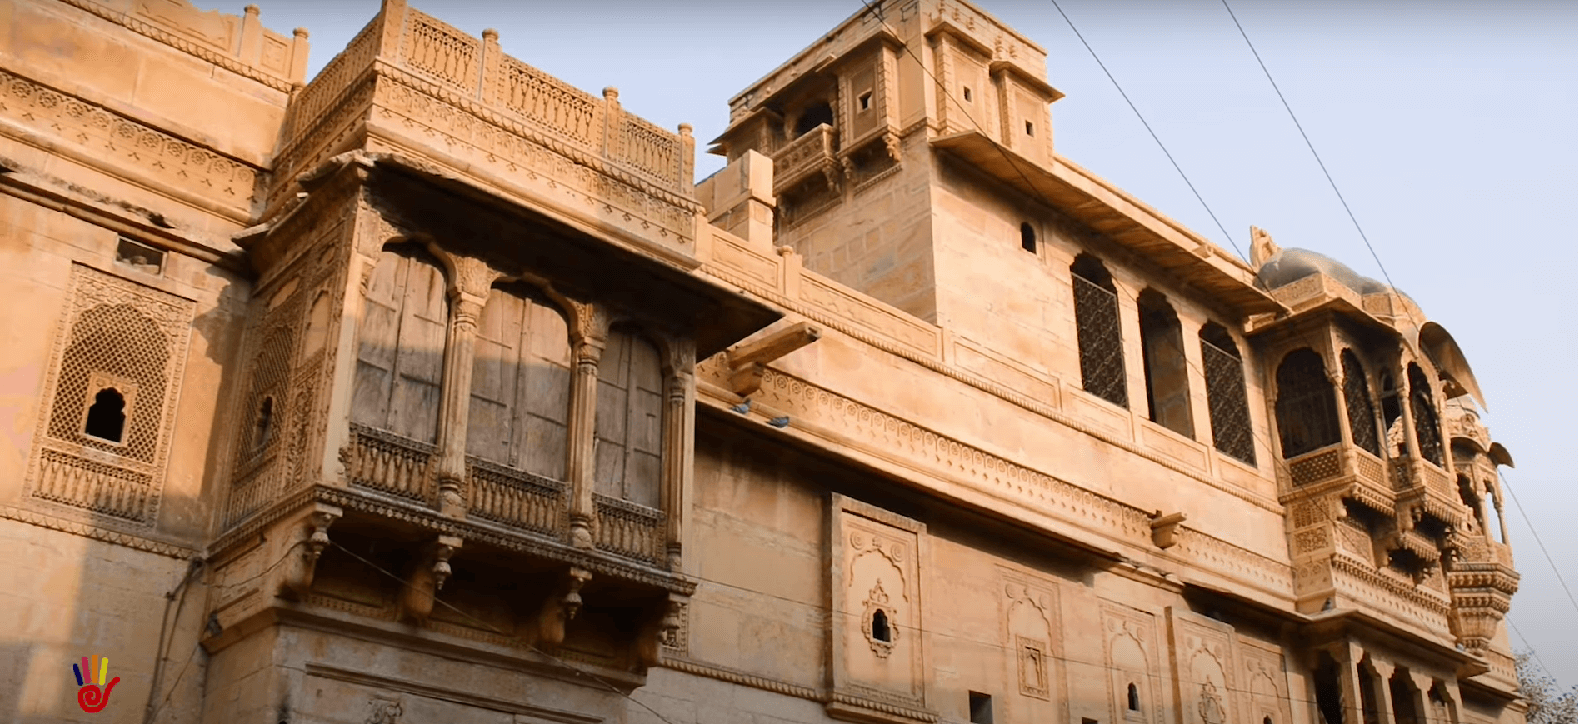 सालिम सिंह की हवेली (Salim singh ki haweli ) Jaisalmer 